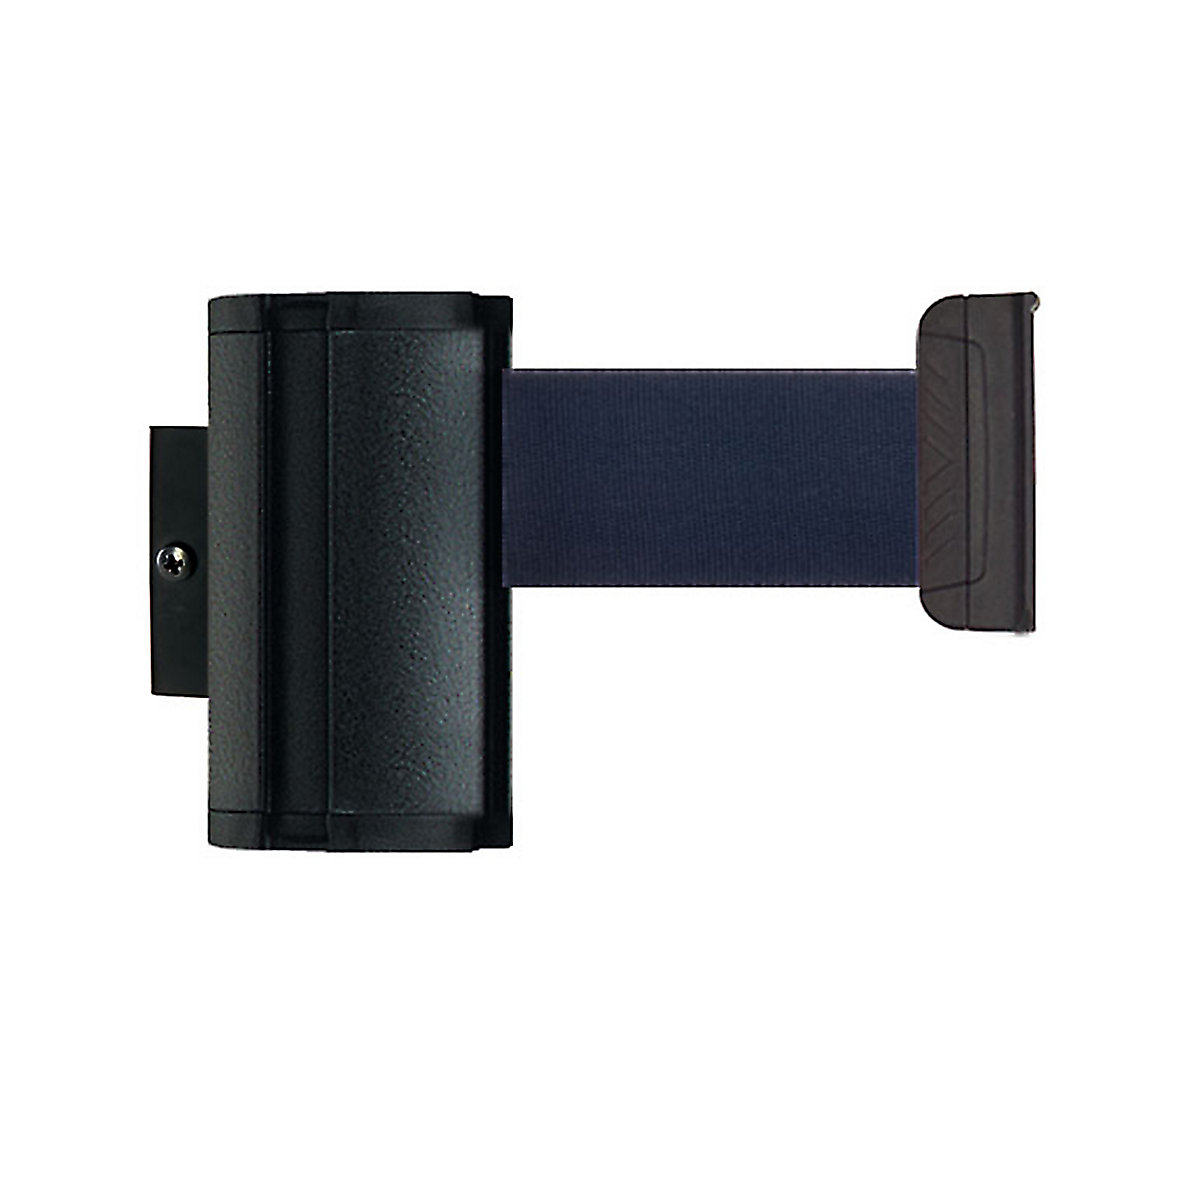 Cassete de cinta Wall Mount, extração máx. da cinta 2300 mm, cor da cinta azul escuro-7